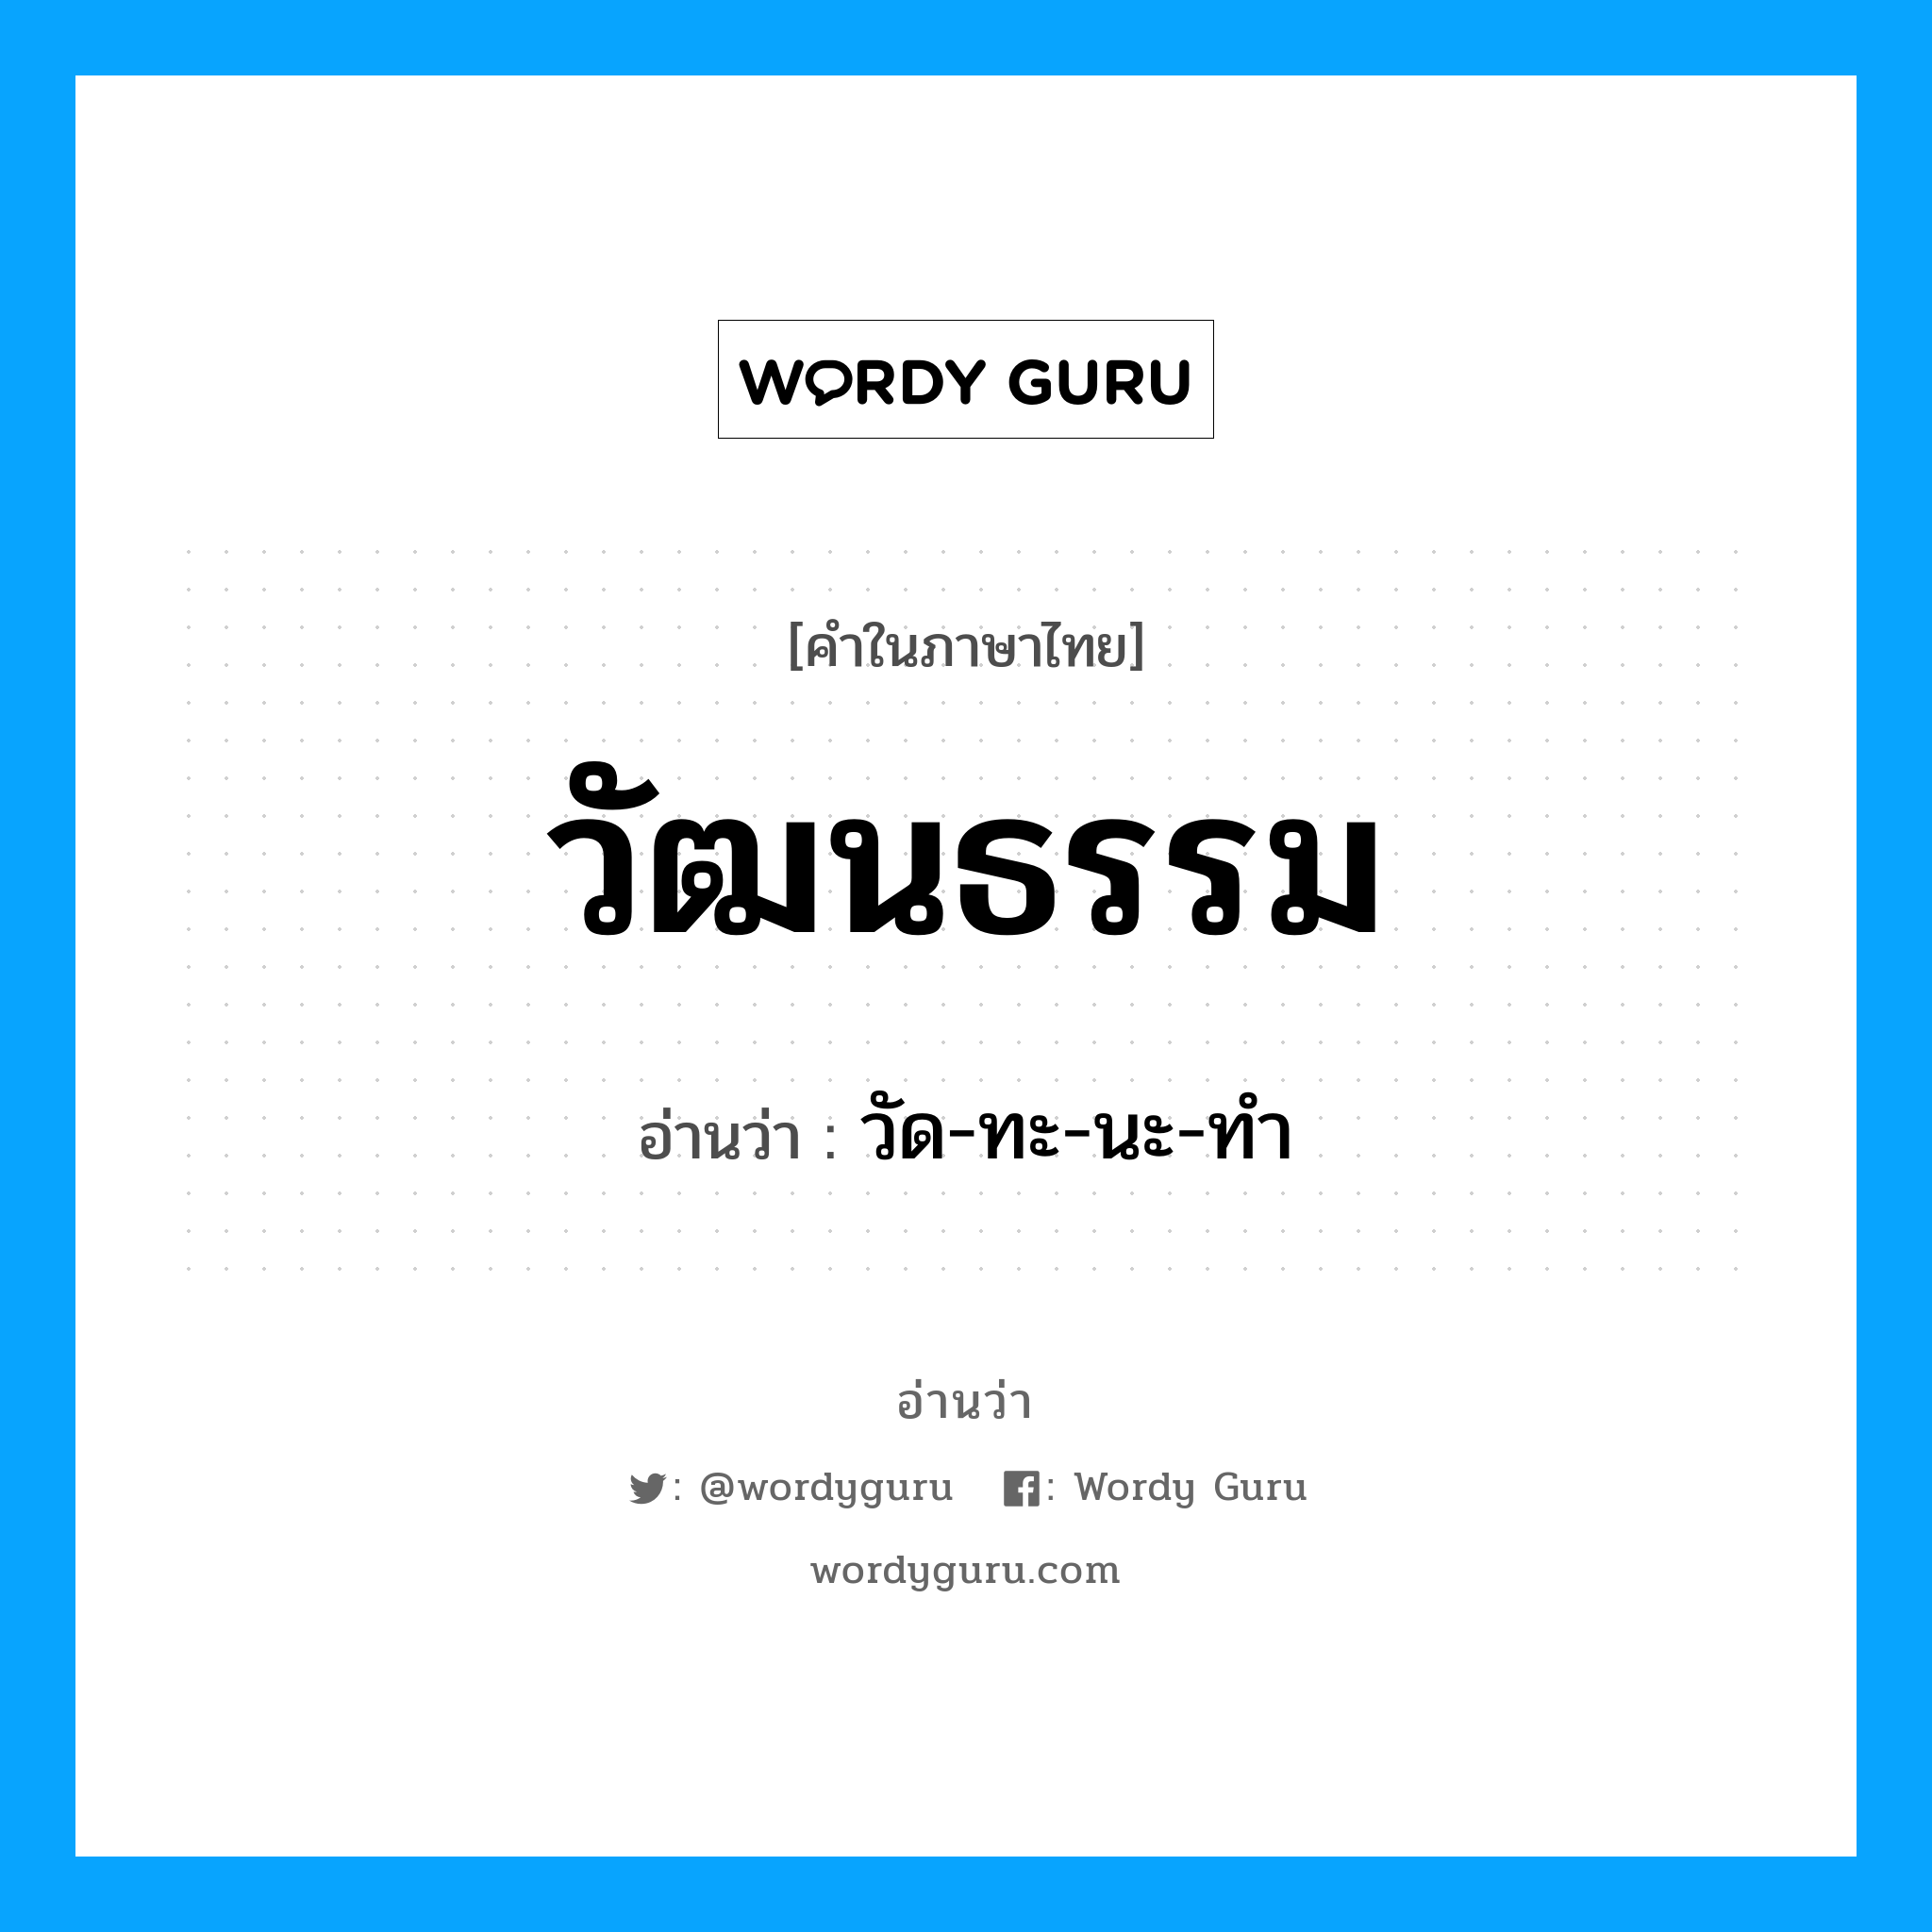 วัด-ทะ-นะ-ทำ เป็นคำอ่านของคำไหน?, คำในภาษาไทย วัด-ทะ-นะ-ทำ อ่านว่า วัฒนธรรม